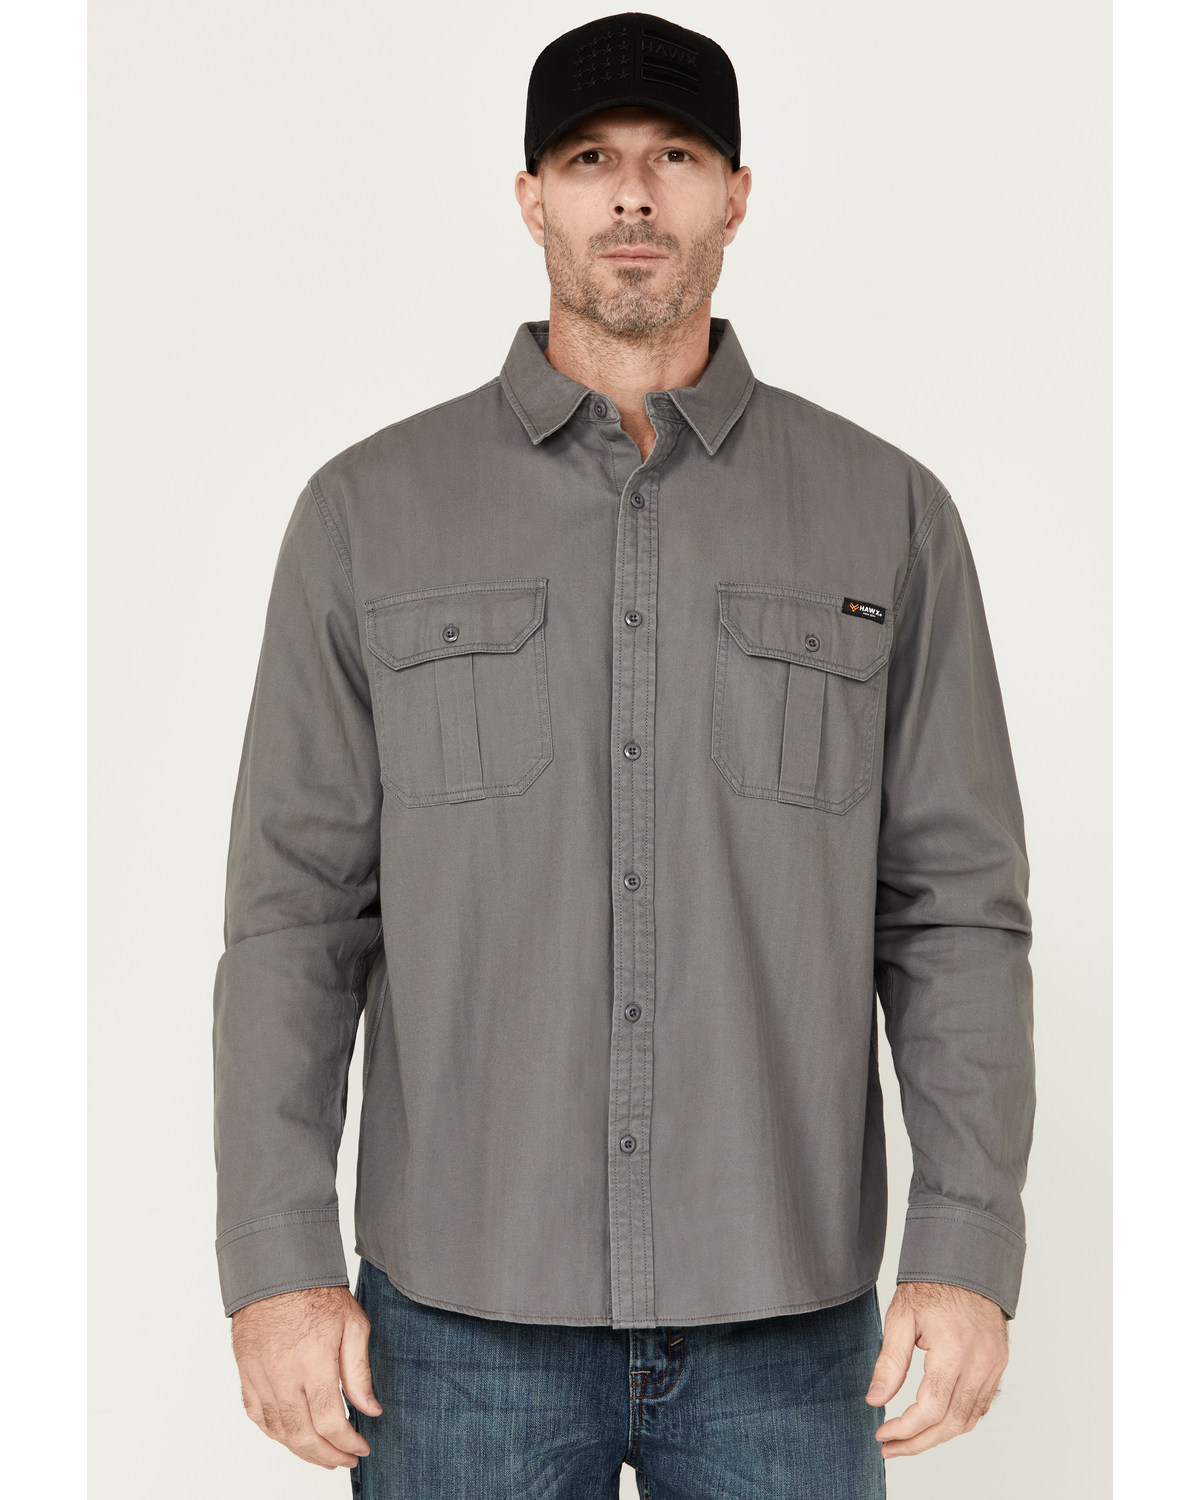 Hawx Men's Long Sleeve Button-Down Work Shirt